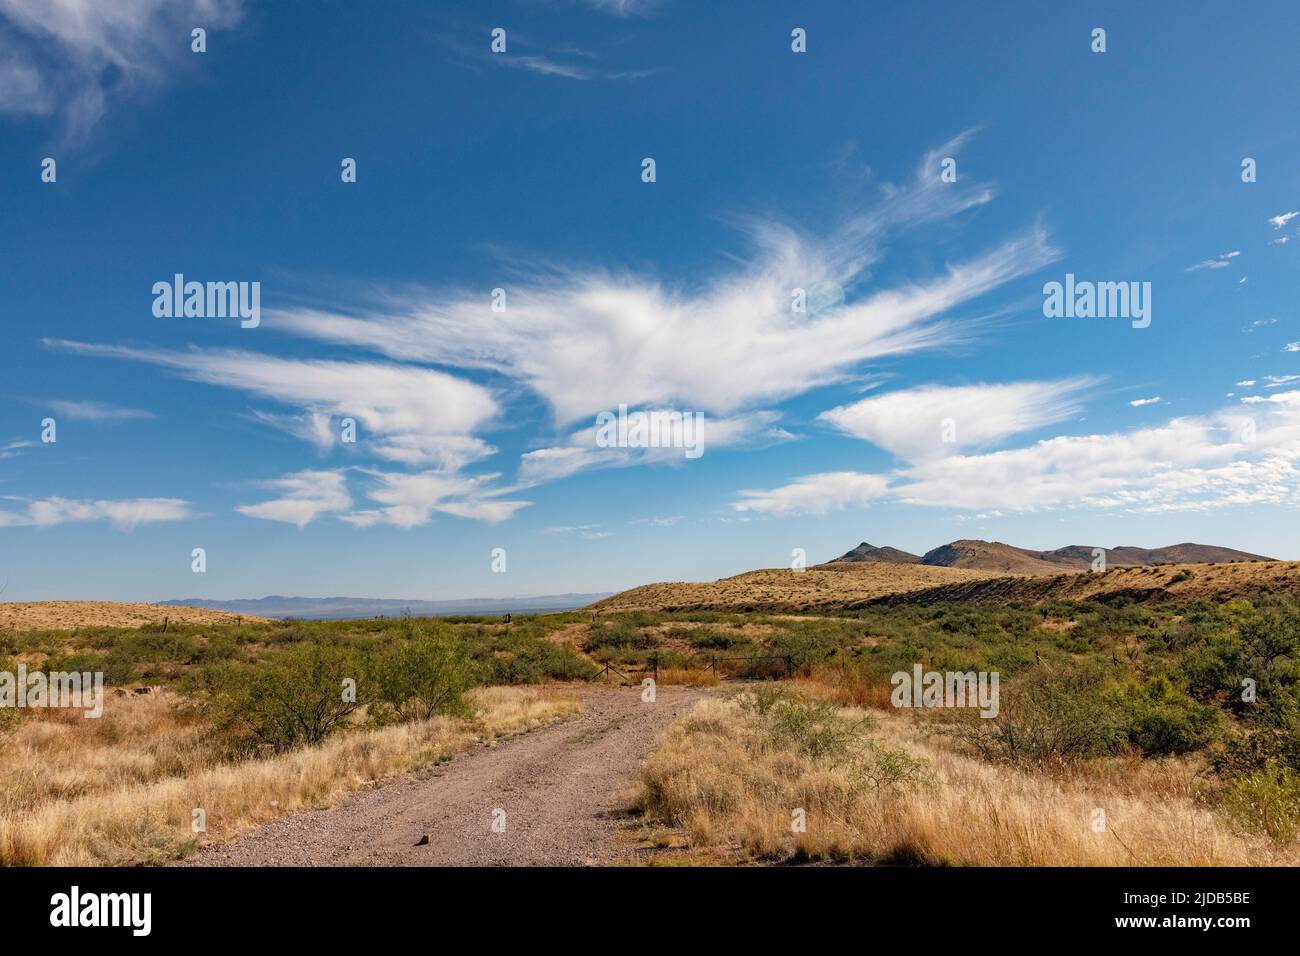 Cirrus Clouds cerca di far cadere un po' di umidità su Arizona, USA; Safford, Arizona, Stati Uniti d'America Foto Stock